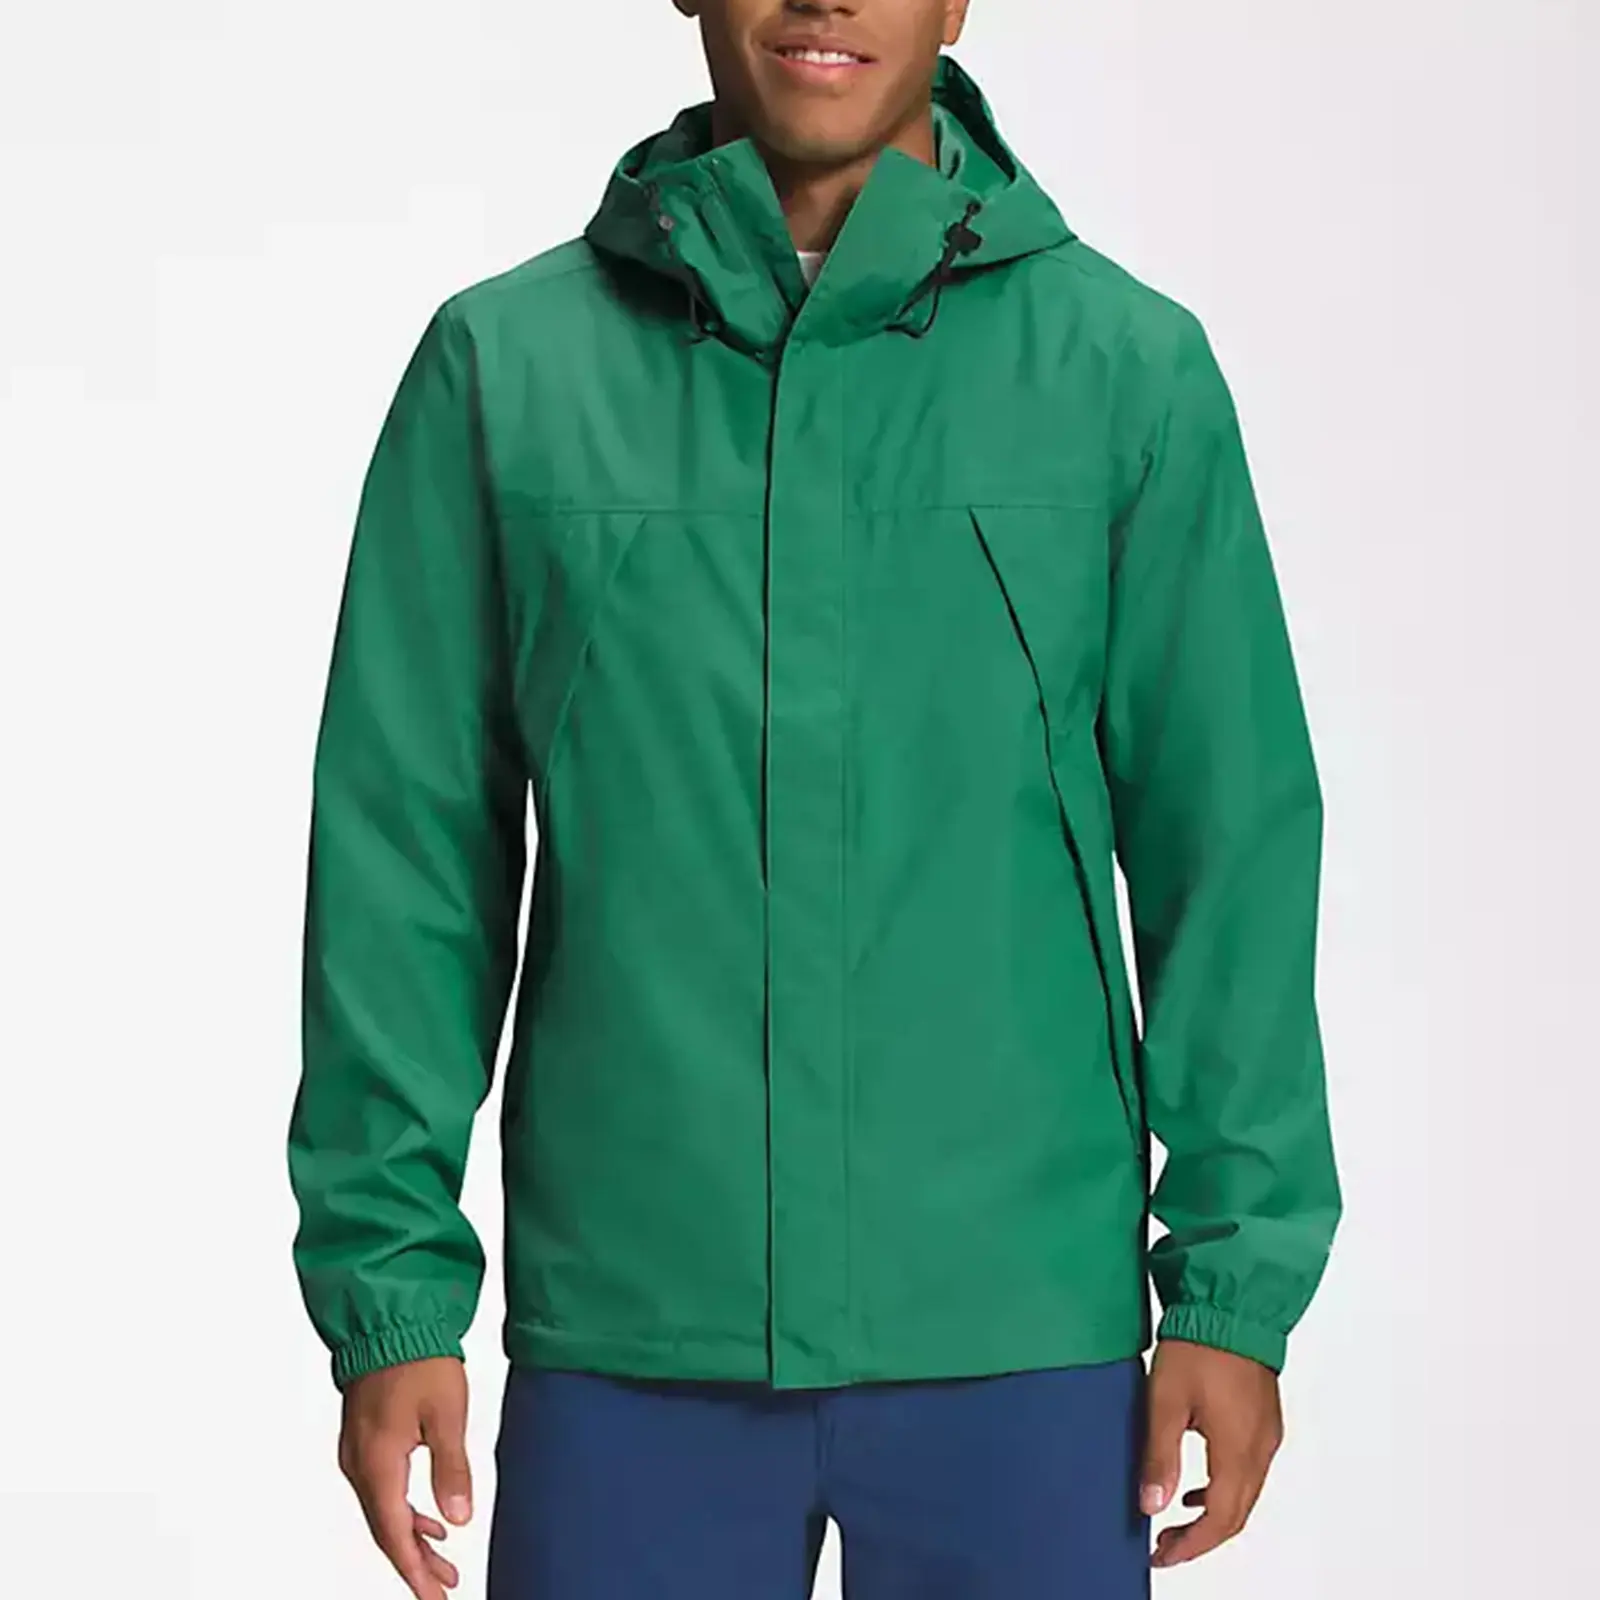 Custom Outdoor Men's Soft Shell Windproof Jackets Hiking Waterproof Softshell Jacket Coats Man Outwear Windbreaker Jackets